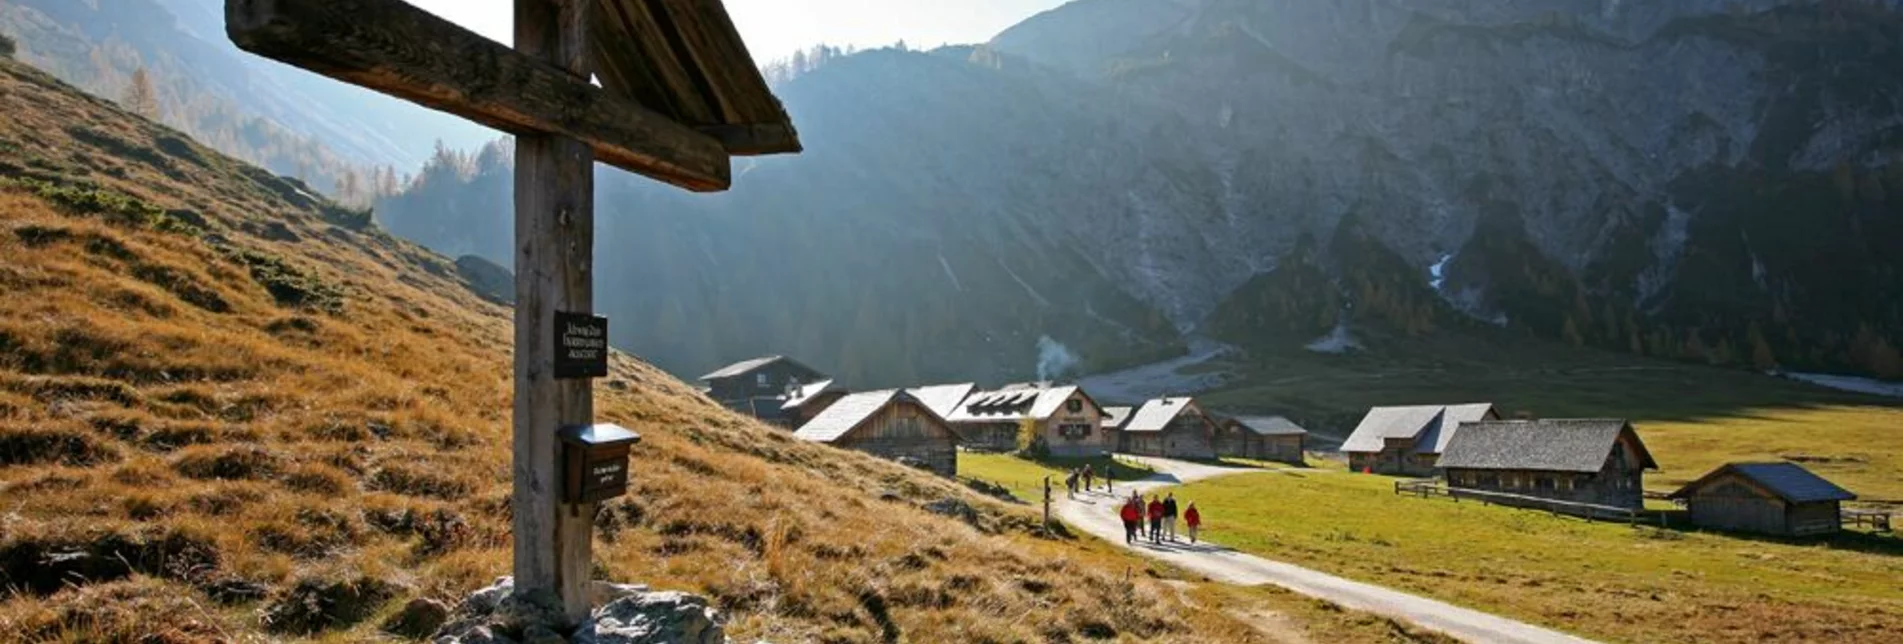 Mountain Hike Around the summit of Steirische Kalkspitze - Touren-Impression #1 | © Tourismusverband Schladming - Herbert Raffalt